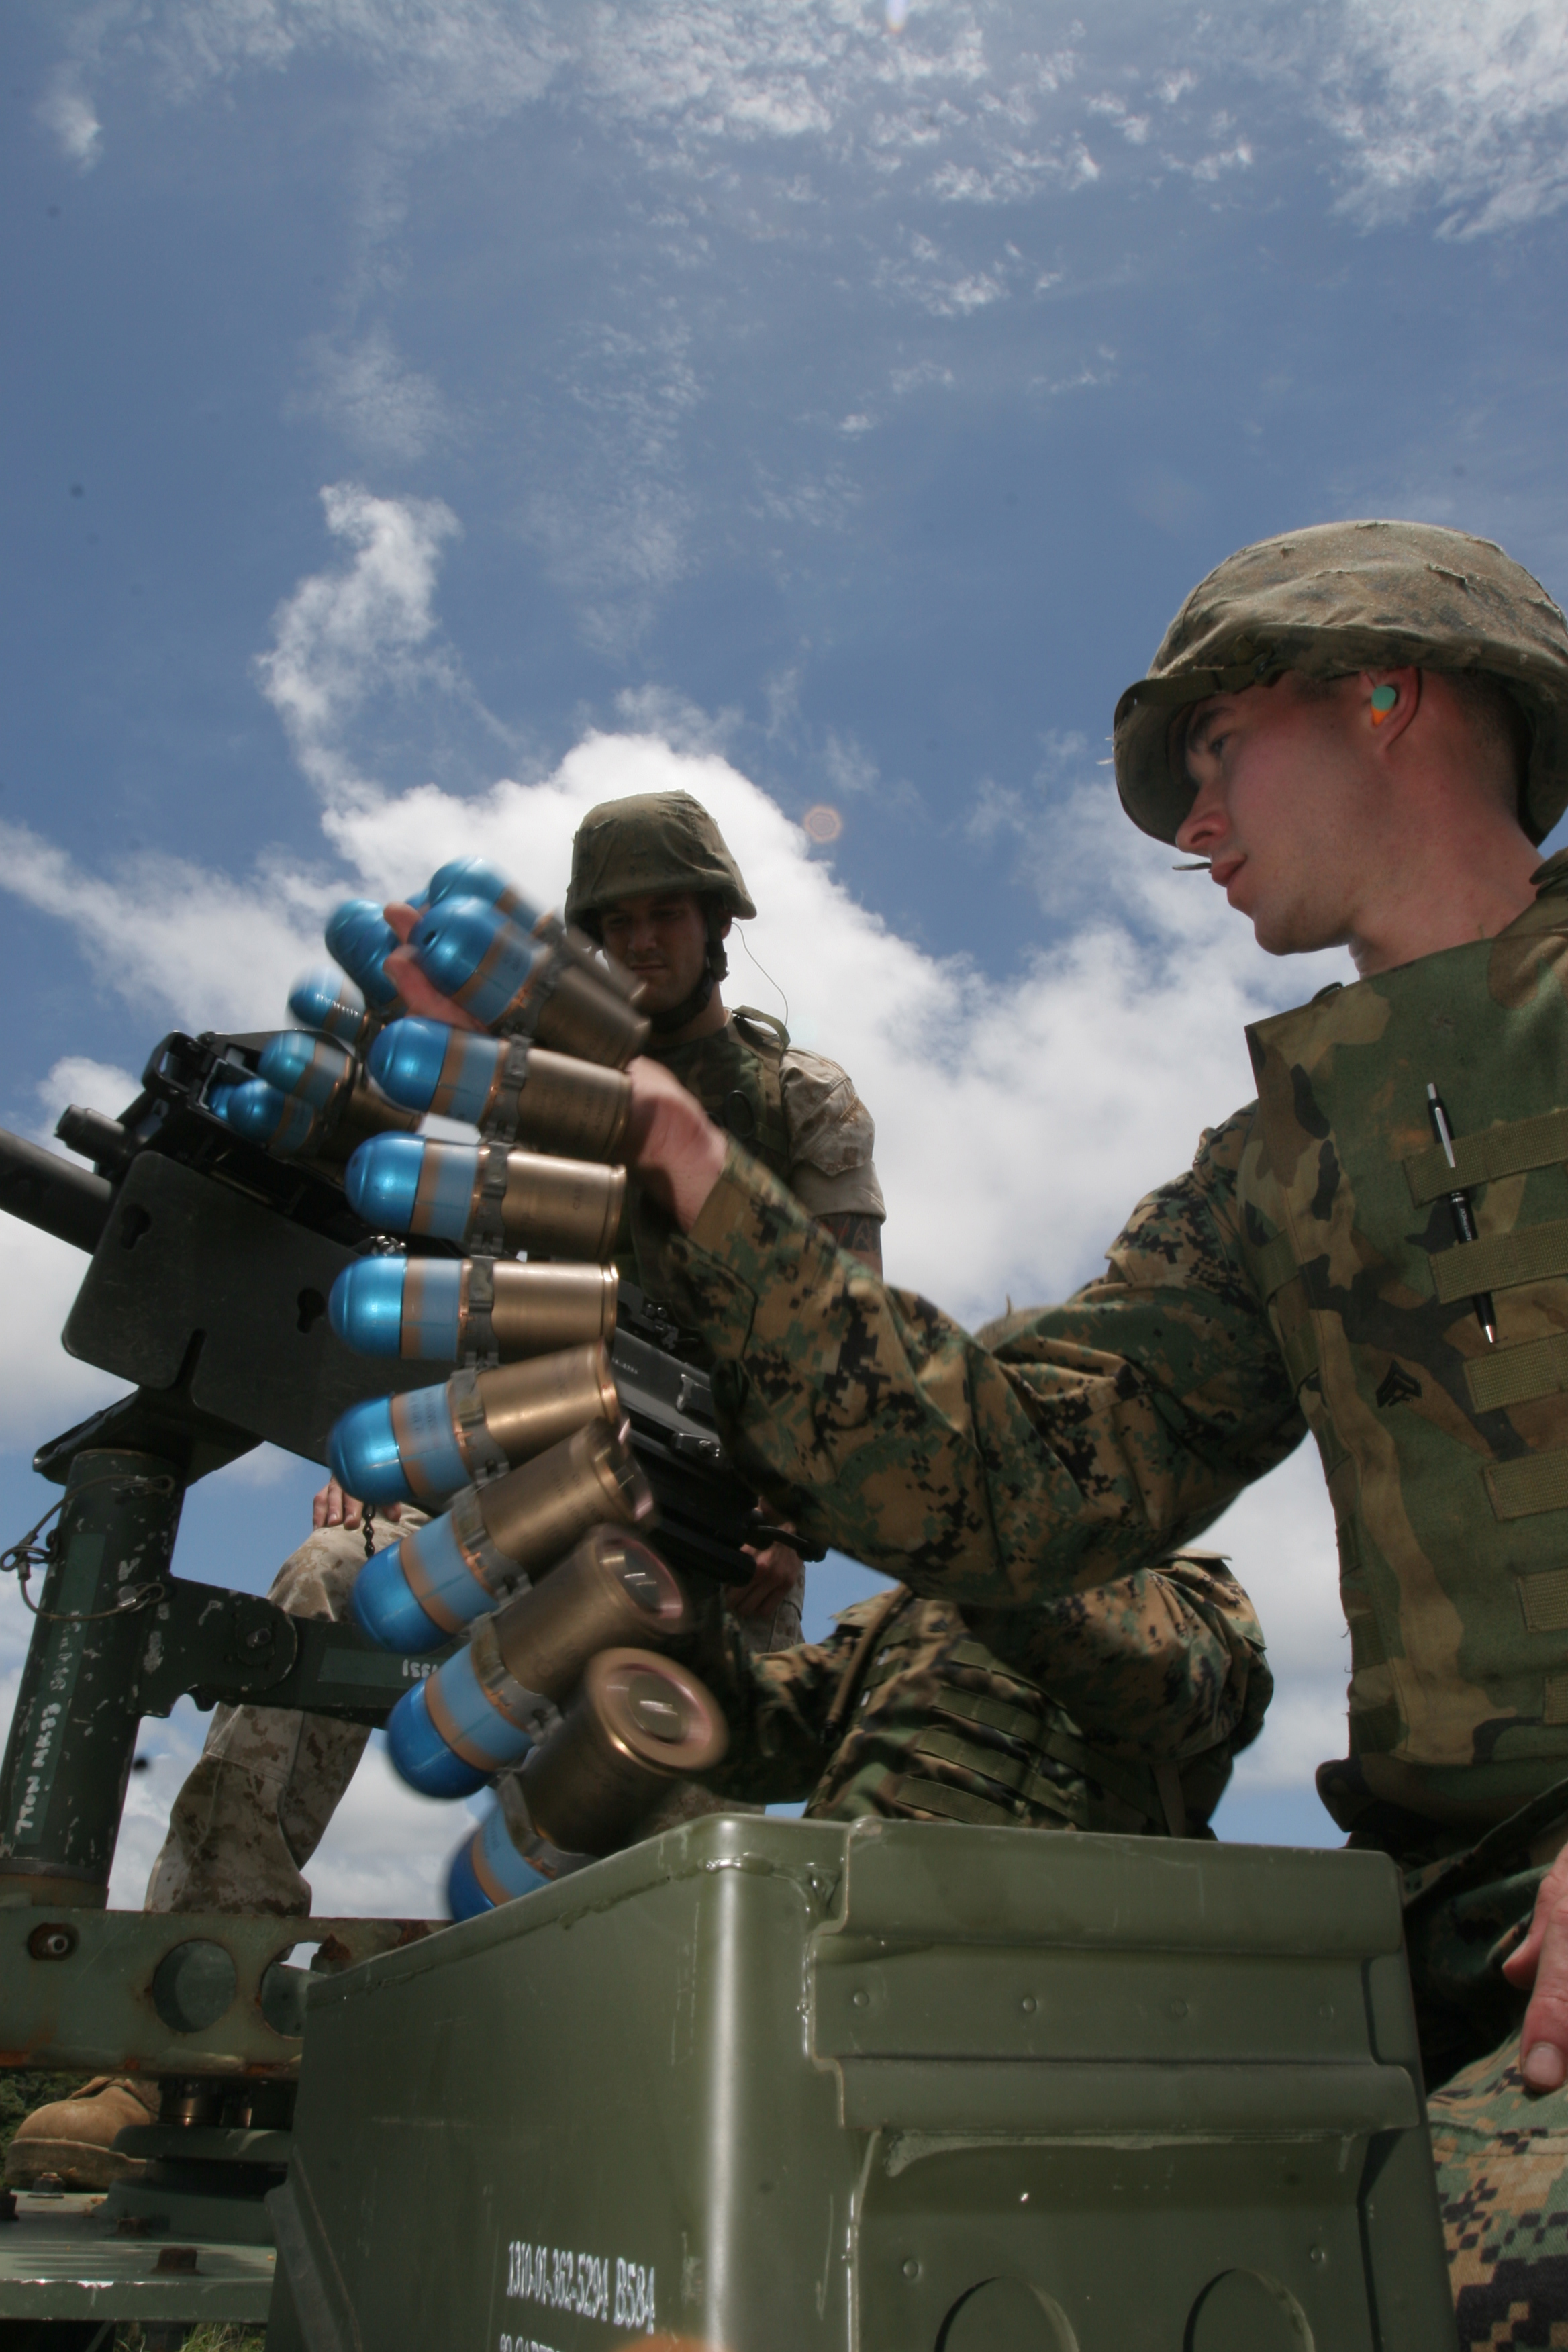 40mm grenade | Military Wiki | FANDOM powered by Wikia